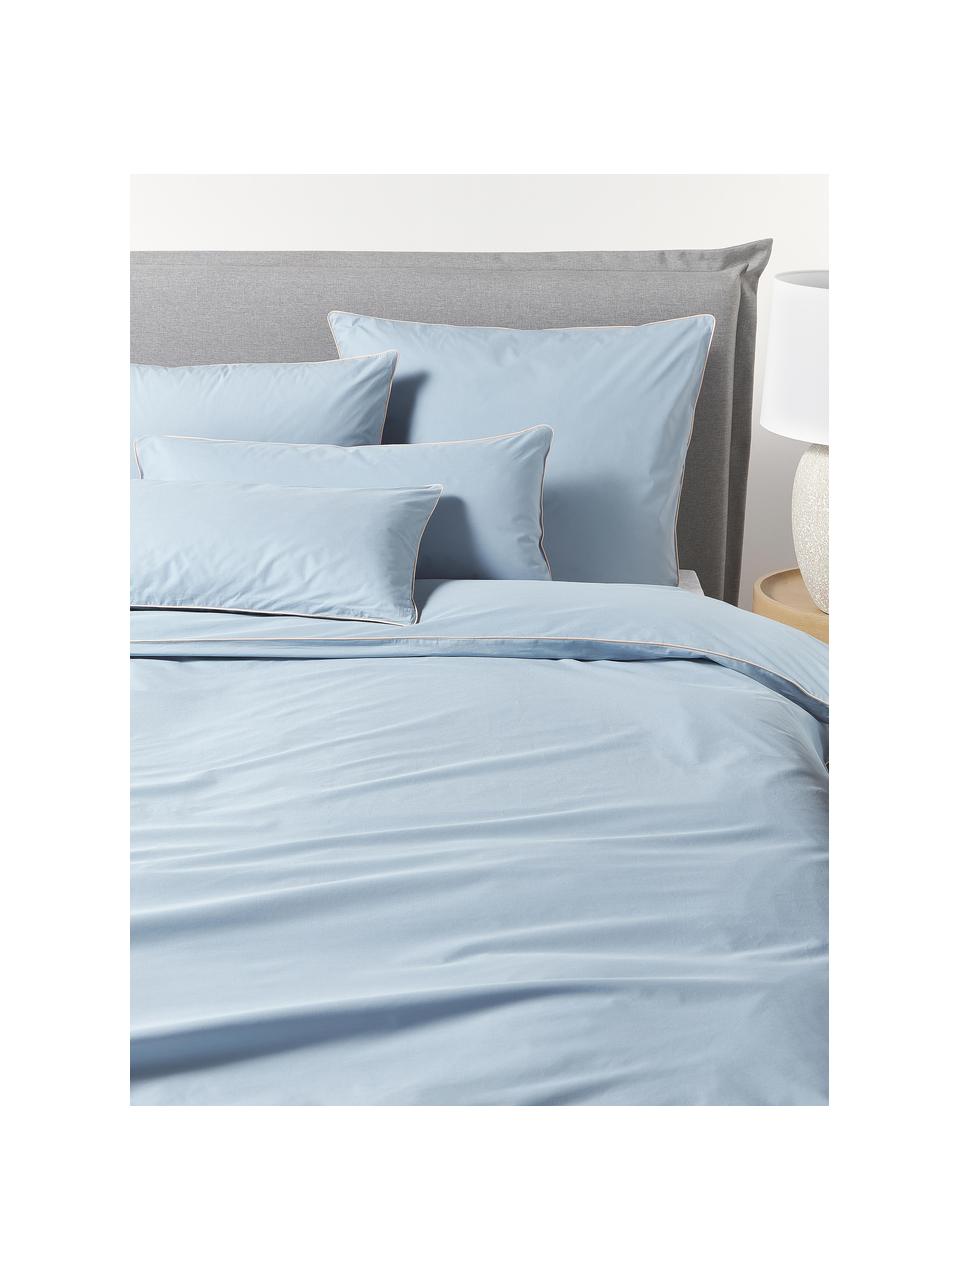 Poszewka na poduszkę z perkalu Daria, Jasny niebieski, jasny beżowy, S 40 x D 80 cm